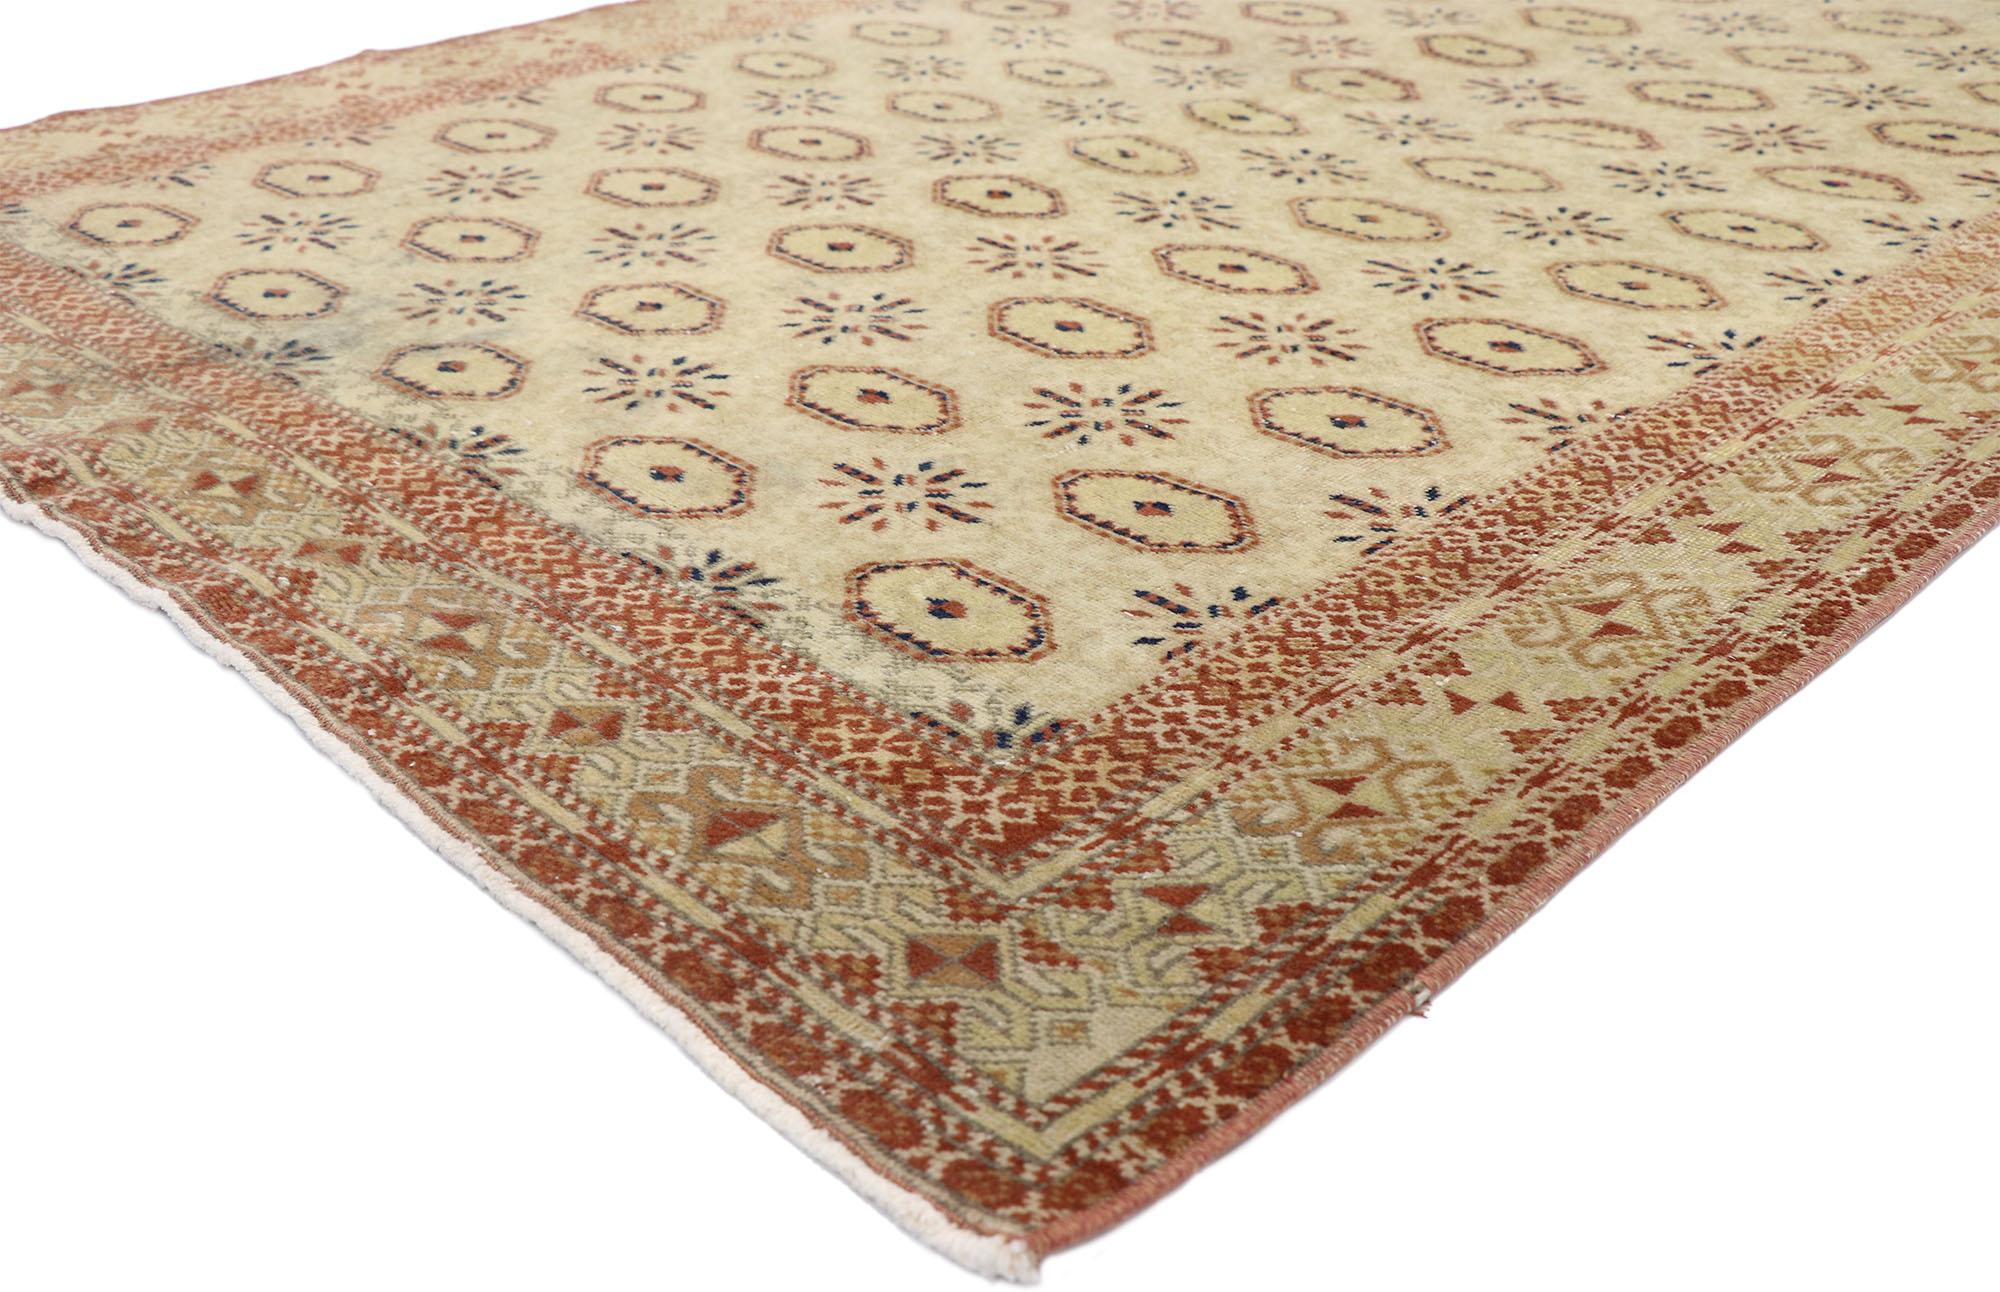 52606, strapazierter türkischer Sivas-Teppich mit turkmenischem Muster und edwardianischem Stil. Dieser handgeknüpfte türkische Sivas-Teppich aus Wolle weist ein geometrisches Muster auf, das sich über ein neutrales, abgewetztes Feld erstreckt. Die